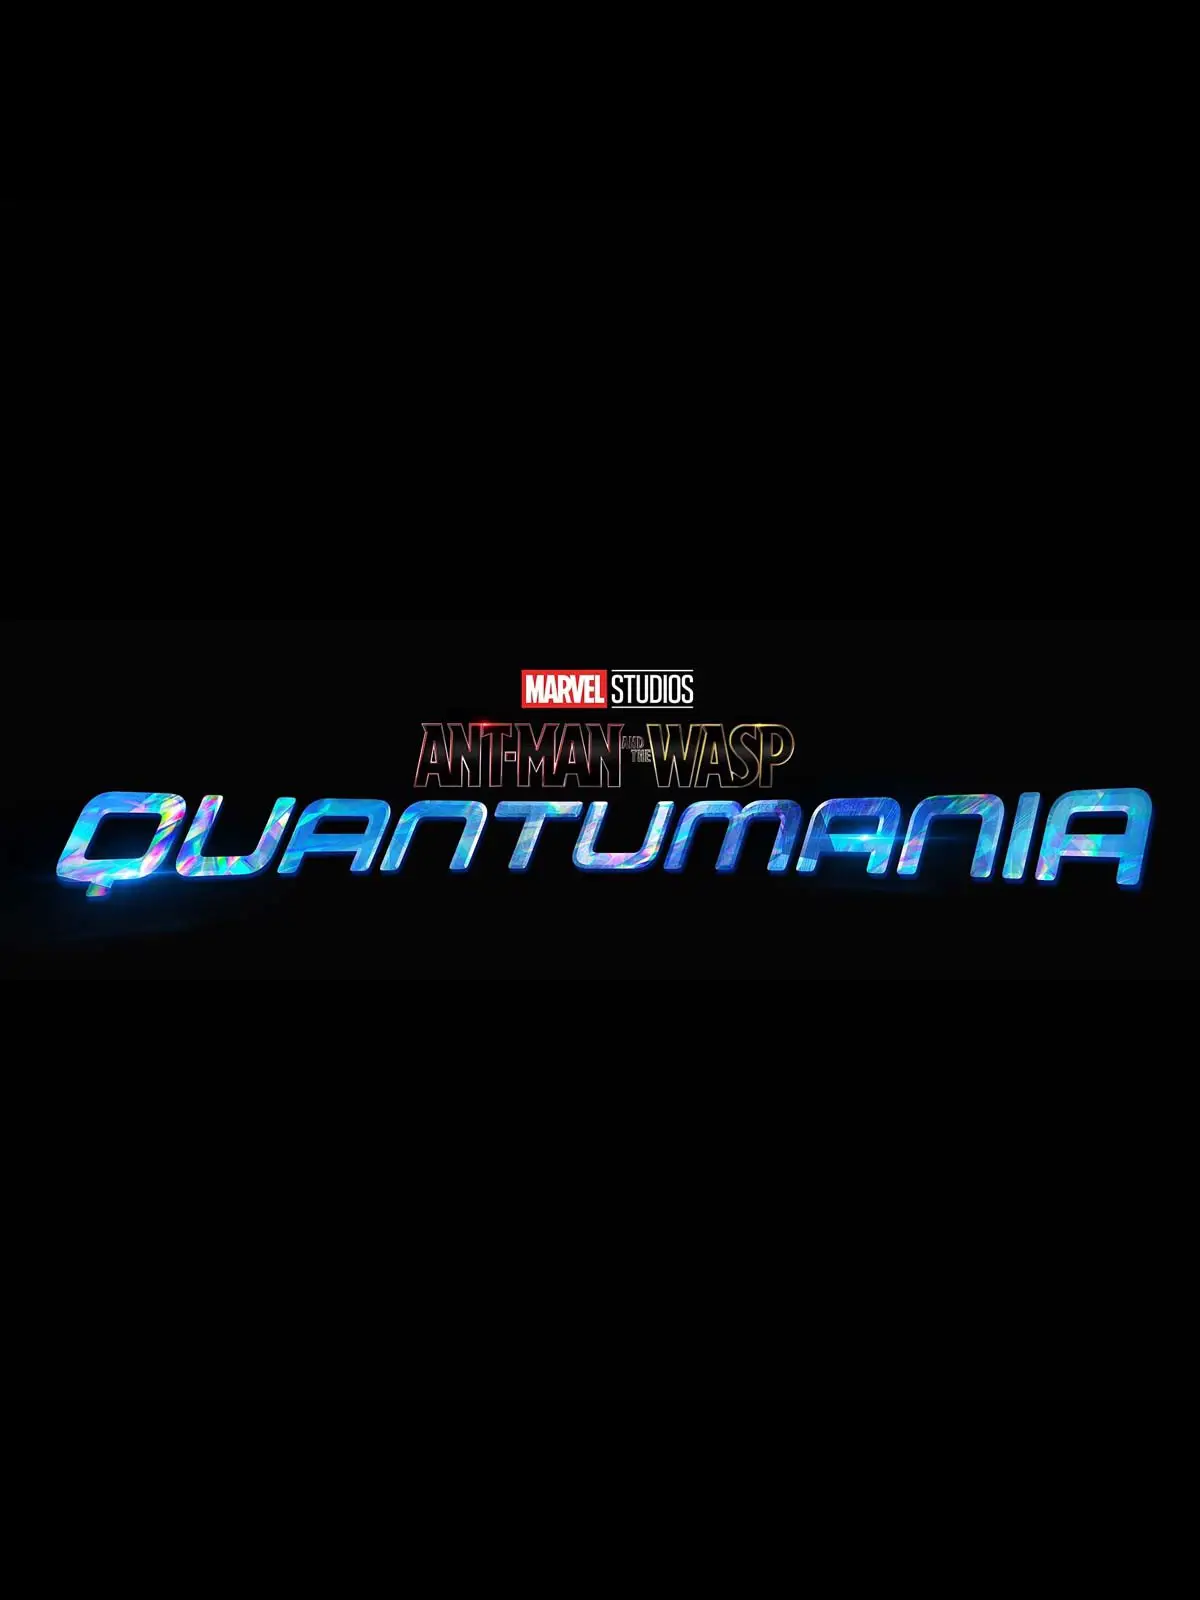 Ant-Man and the Wasp: Quantamania